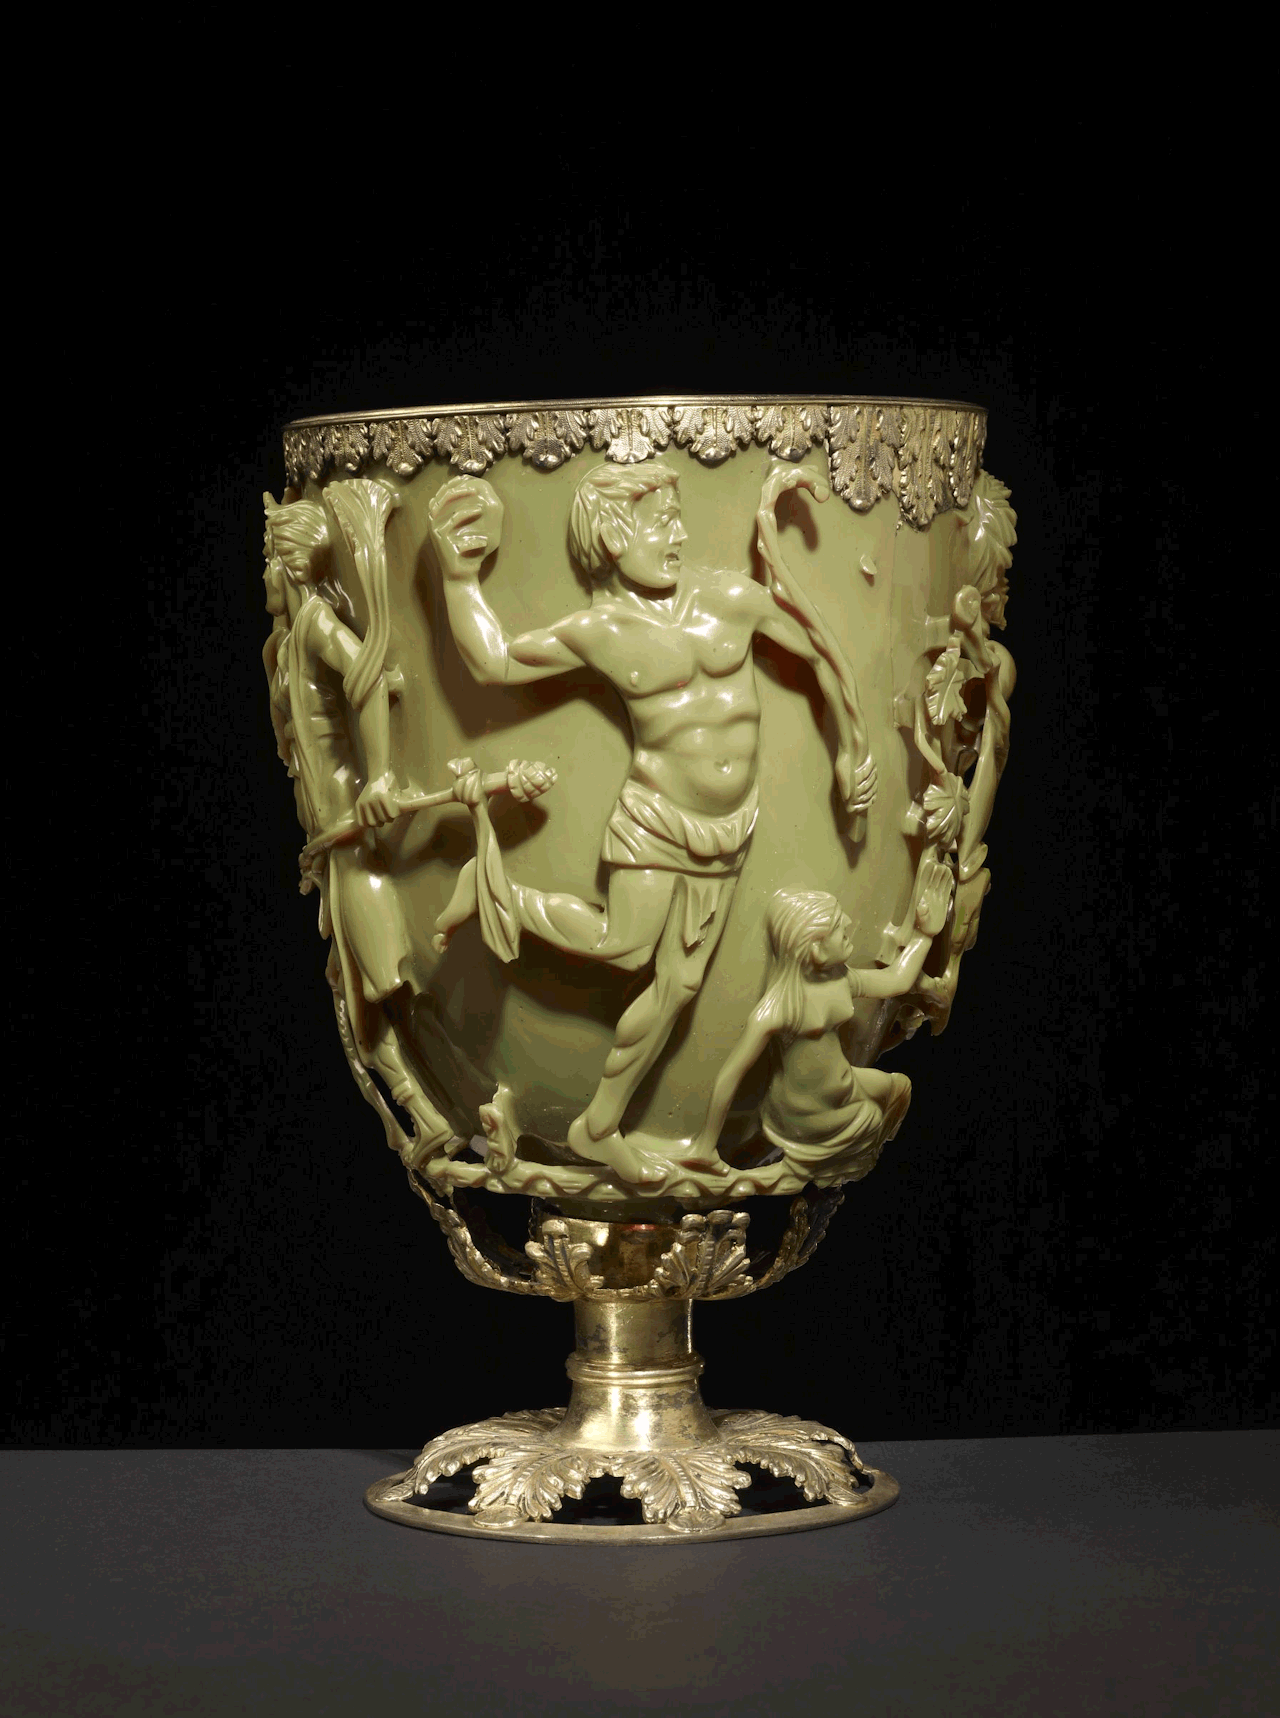 Roman Lycurgus Cup adalah piala Romawi berwarna hijau giok berusia 1,600 tahun. Saat Anda meletakkan sumber cahaya di dalamnya, itu secara ajaib berubah warna. Nampak hijau giok saat dinyalakan dari depan tetapi berwarna merah darah saat menyala dari belakang atau dalam.